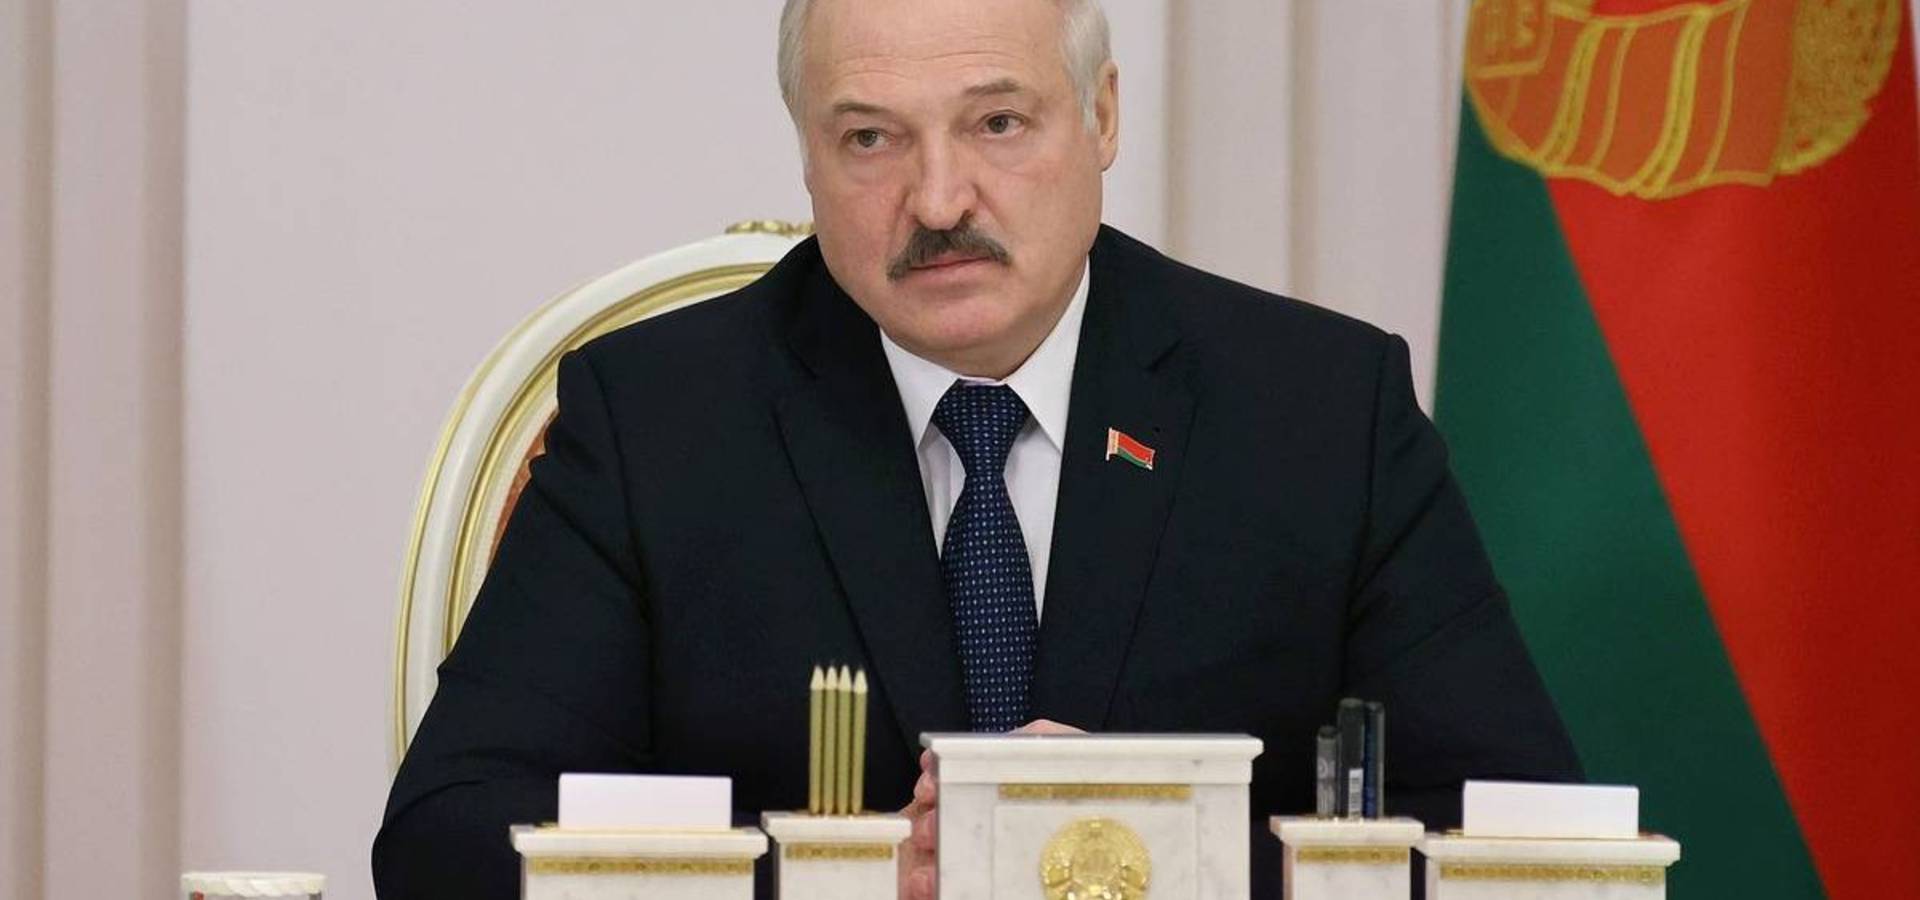 Білорусь не планує брати участь у війні Росії проти України, - Лукашенко